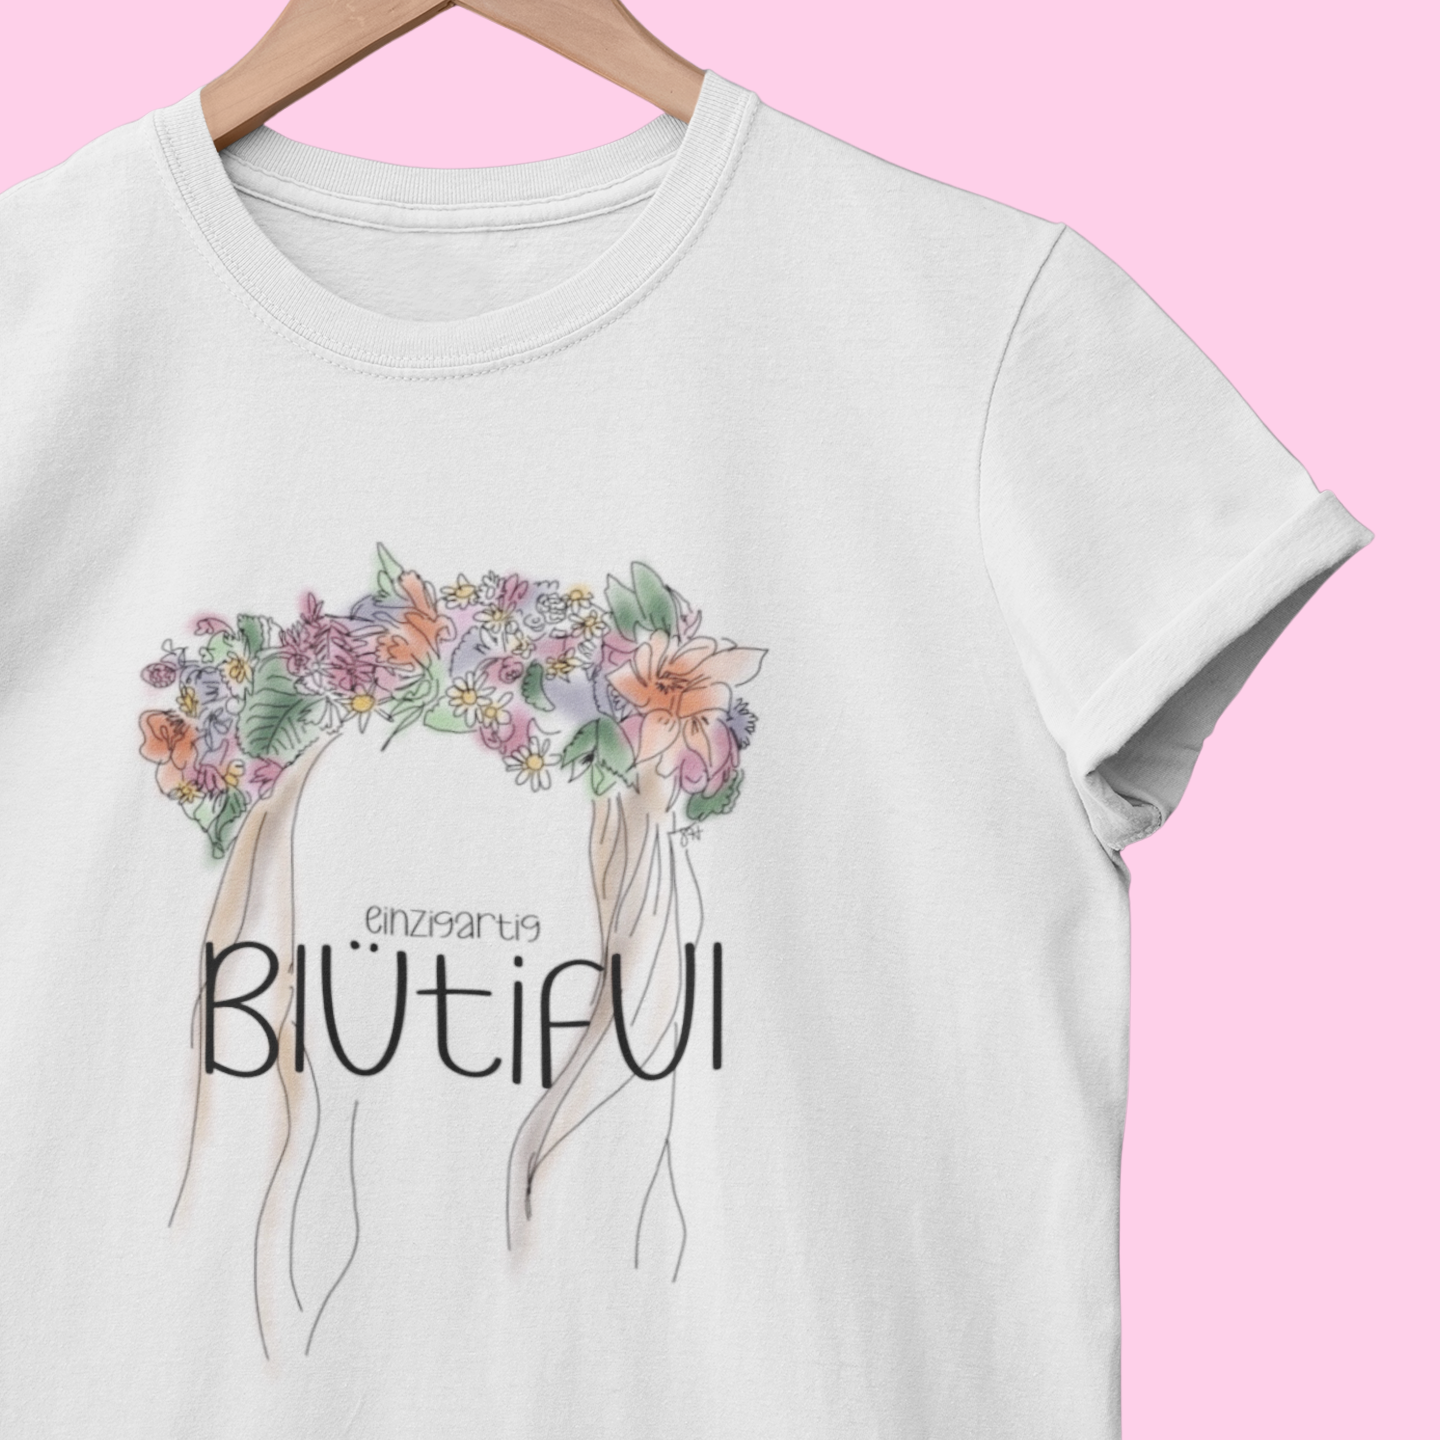 Blütezeit - Blütiful - Damen T-Shirt